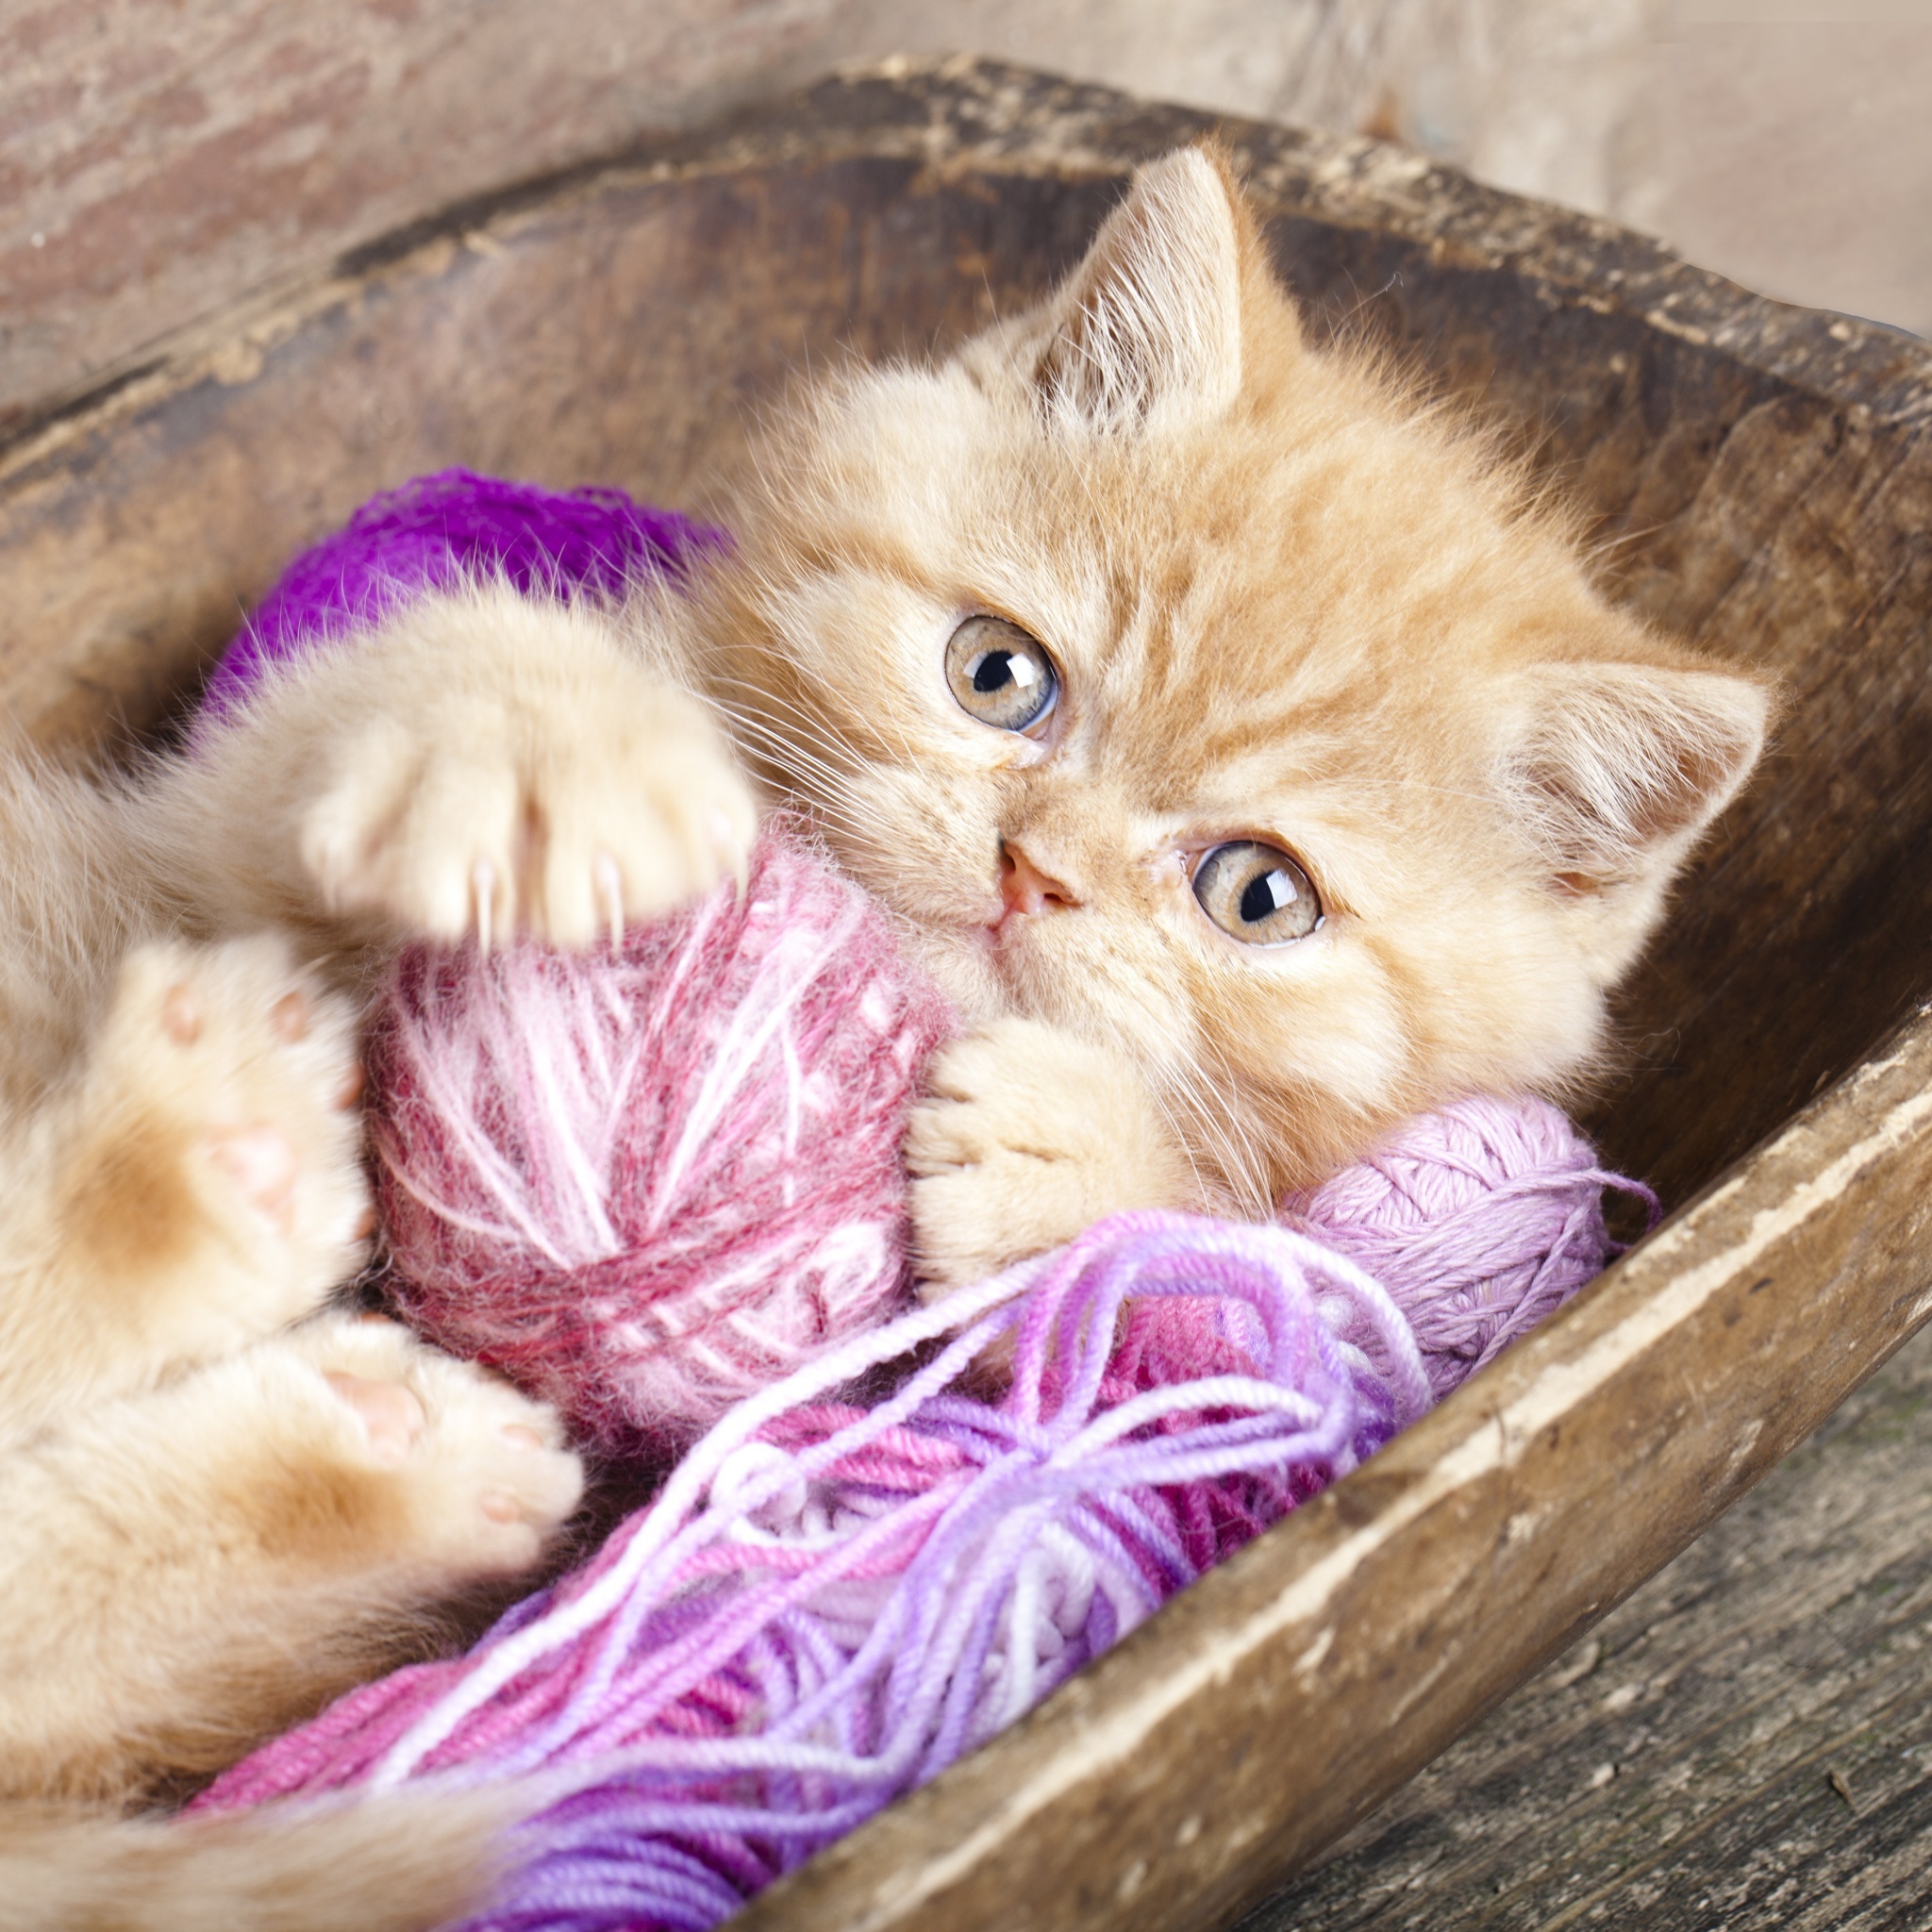 Sfondi Cute Kitten Playing With A Ball Of Yarn 2048x2048